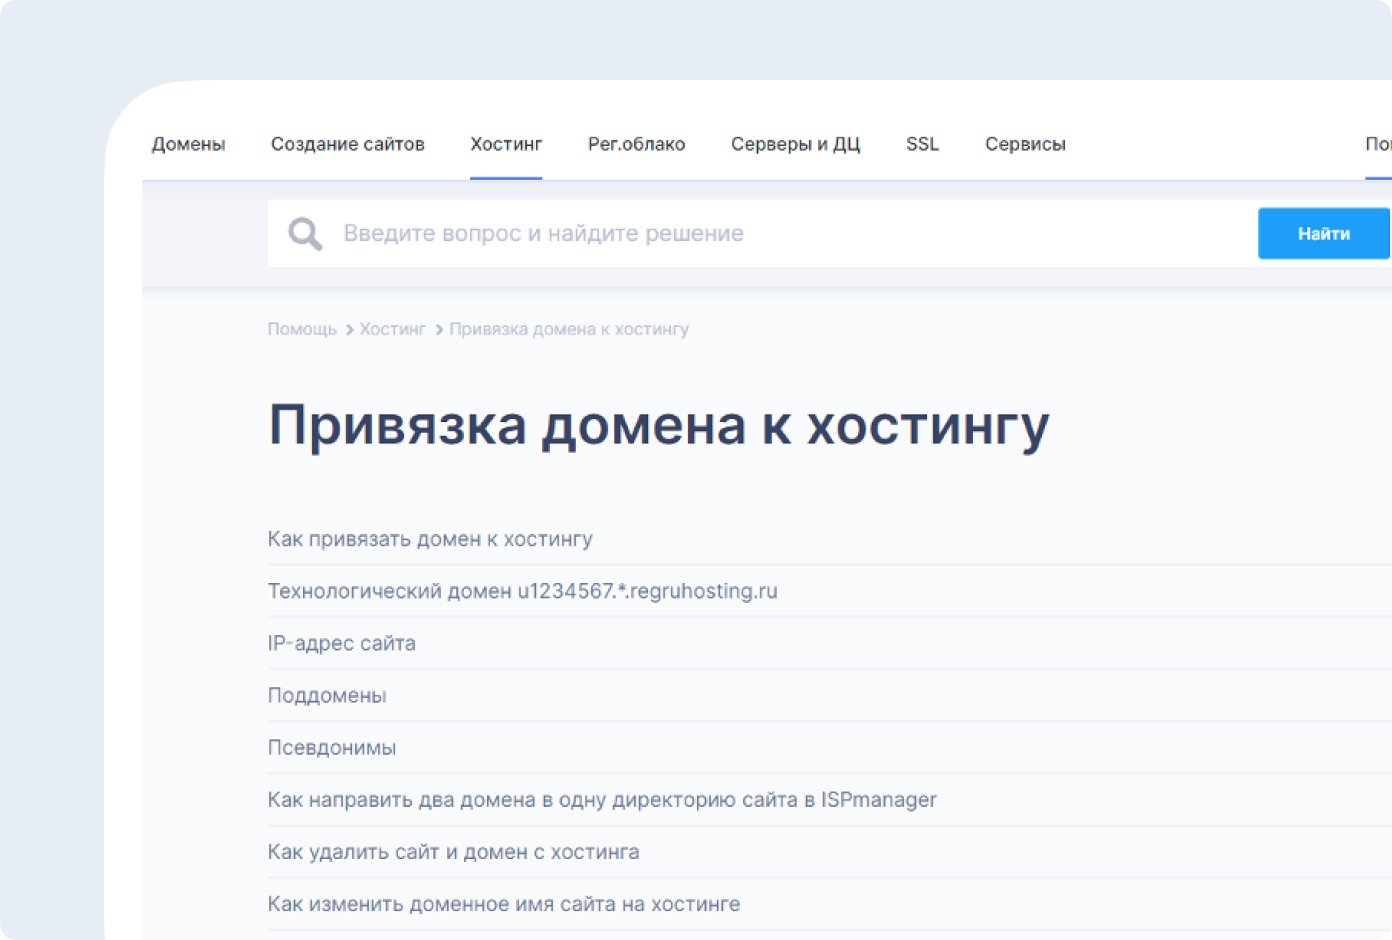 Регистратор и хостинг-провайдер Reg.ru создал на своем сайте базу знаний с подробными разборами частых вопросов пользователей. Например, там можно узнать, как самостоятельно настроить ресурсные записи для домена 